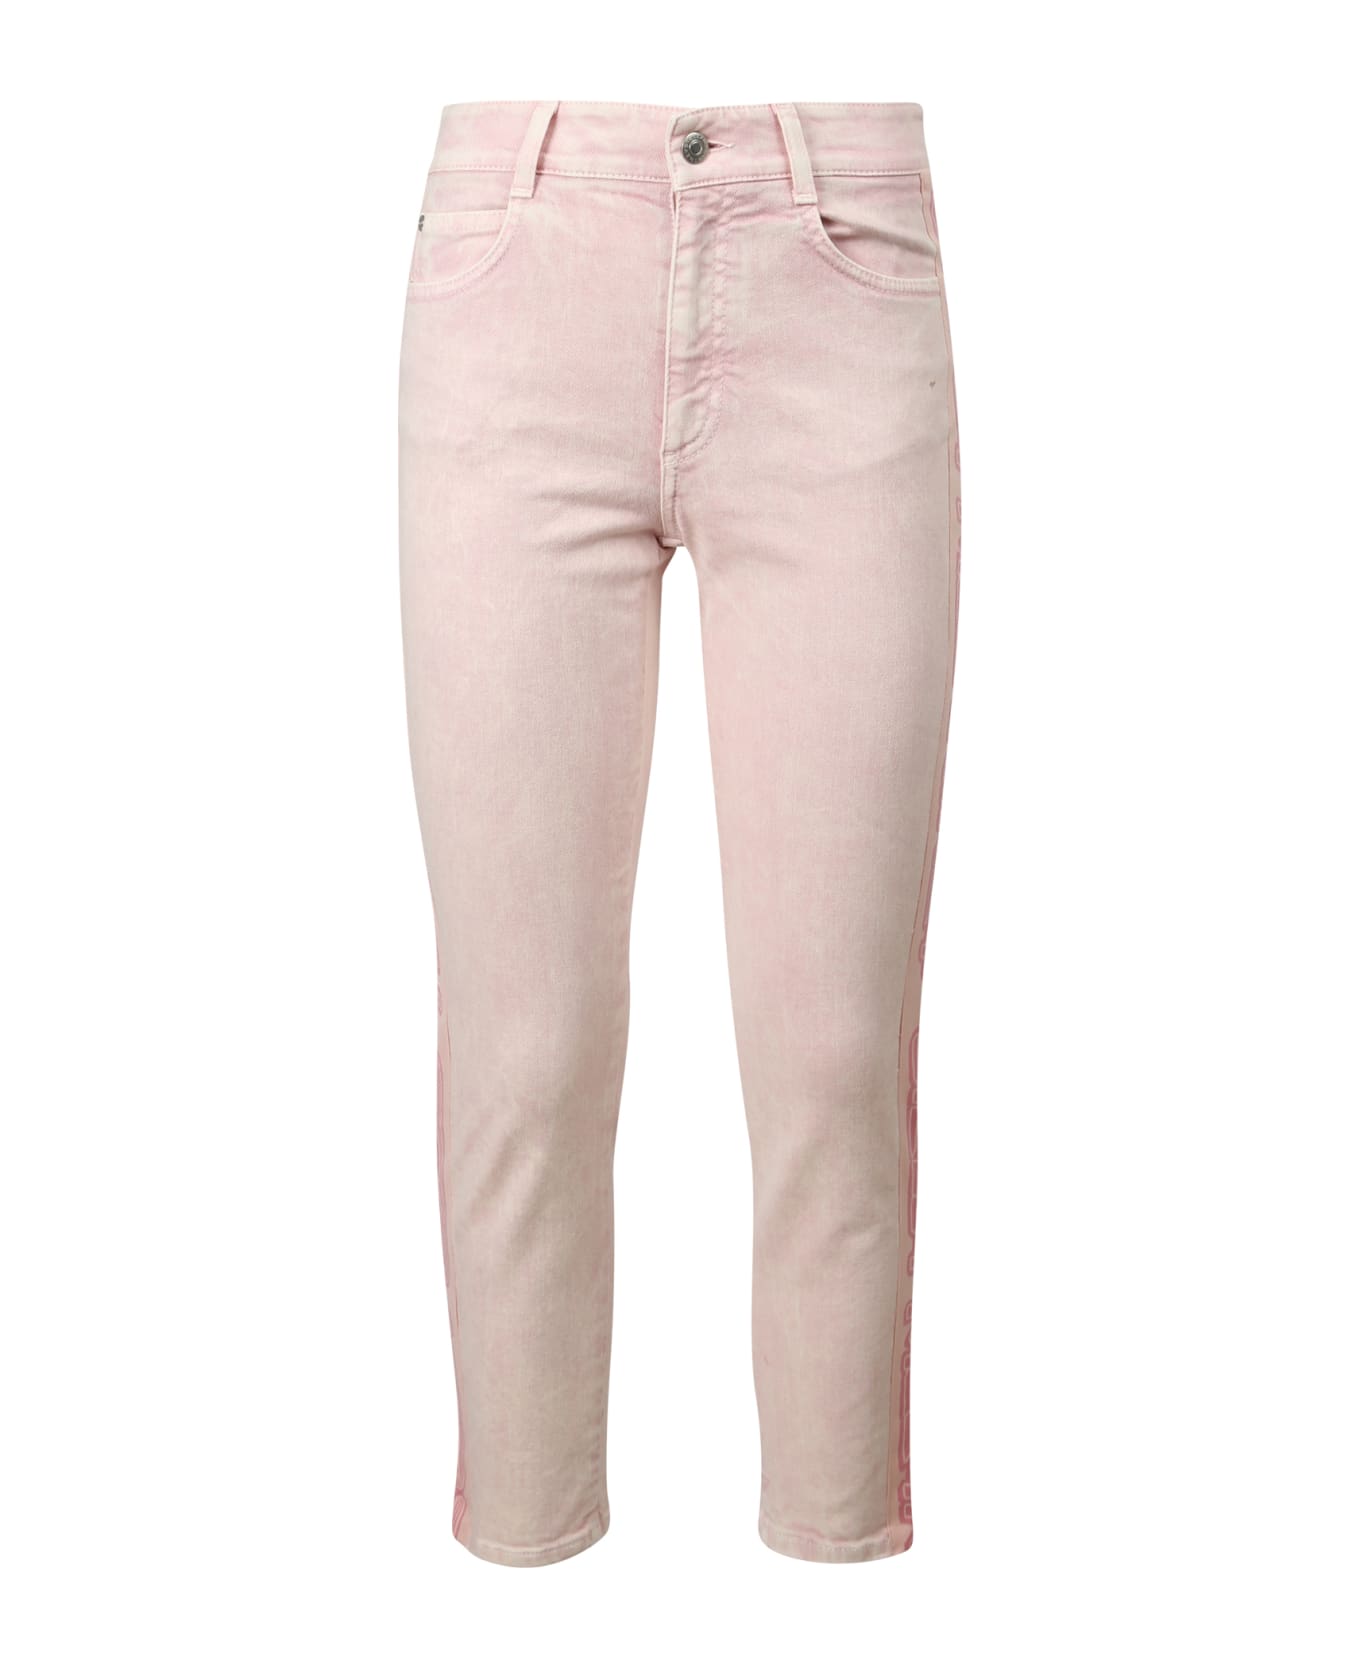 Stella McCartney Boyfriend Skinny Jeans - Pink